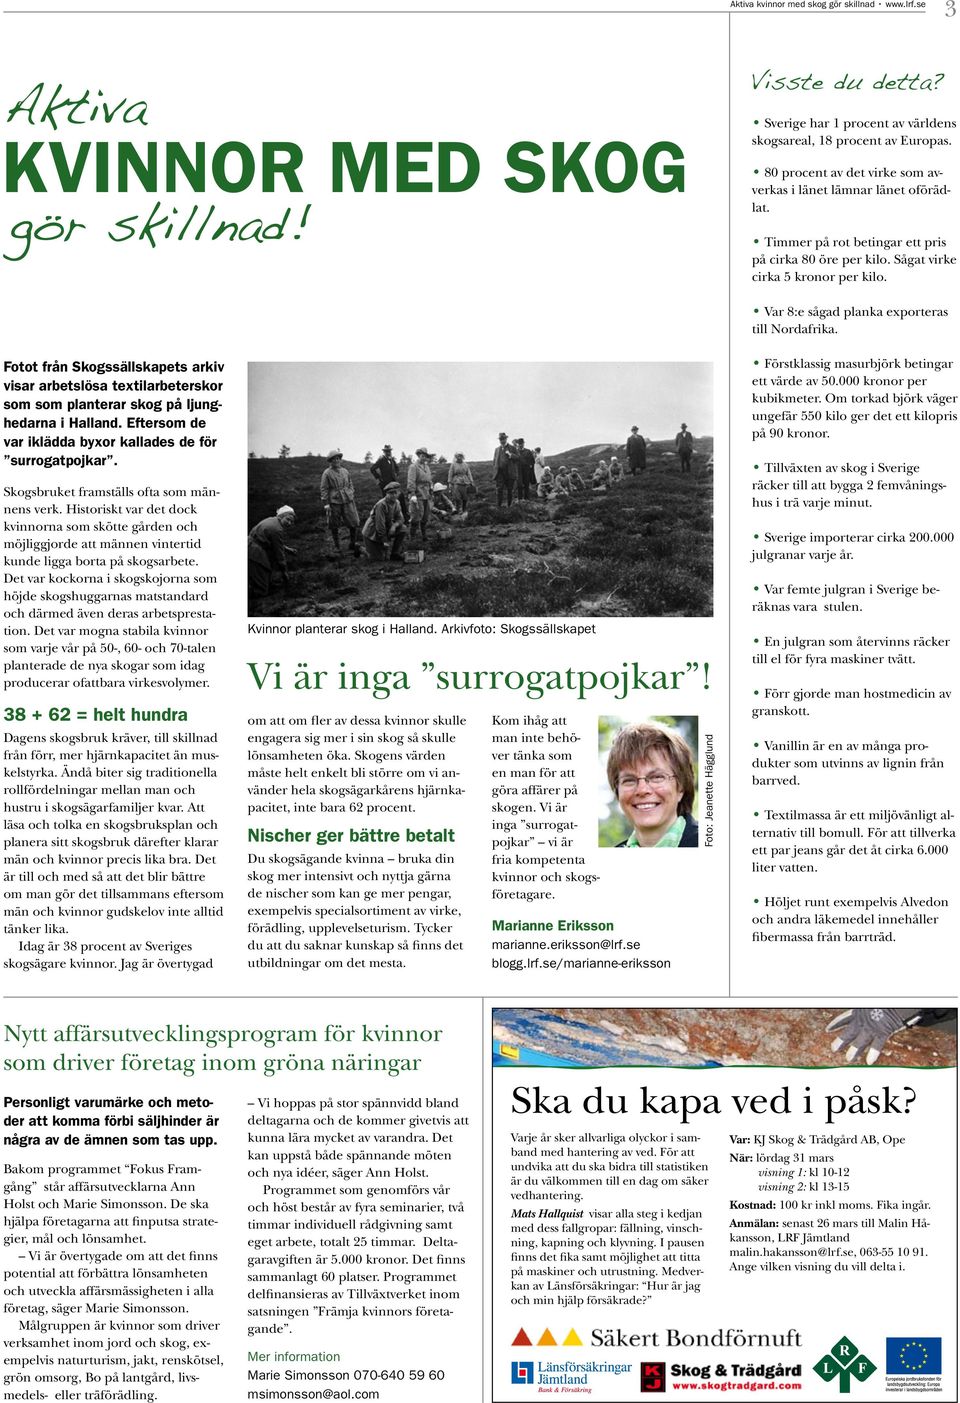 Sågat virke cirka 5 kronor per kilo. Fotot från Skogssällskapets arkiv visar arbetslösa textilarbeterskor som som planterar skog på ljunghedarna i Halland.